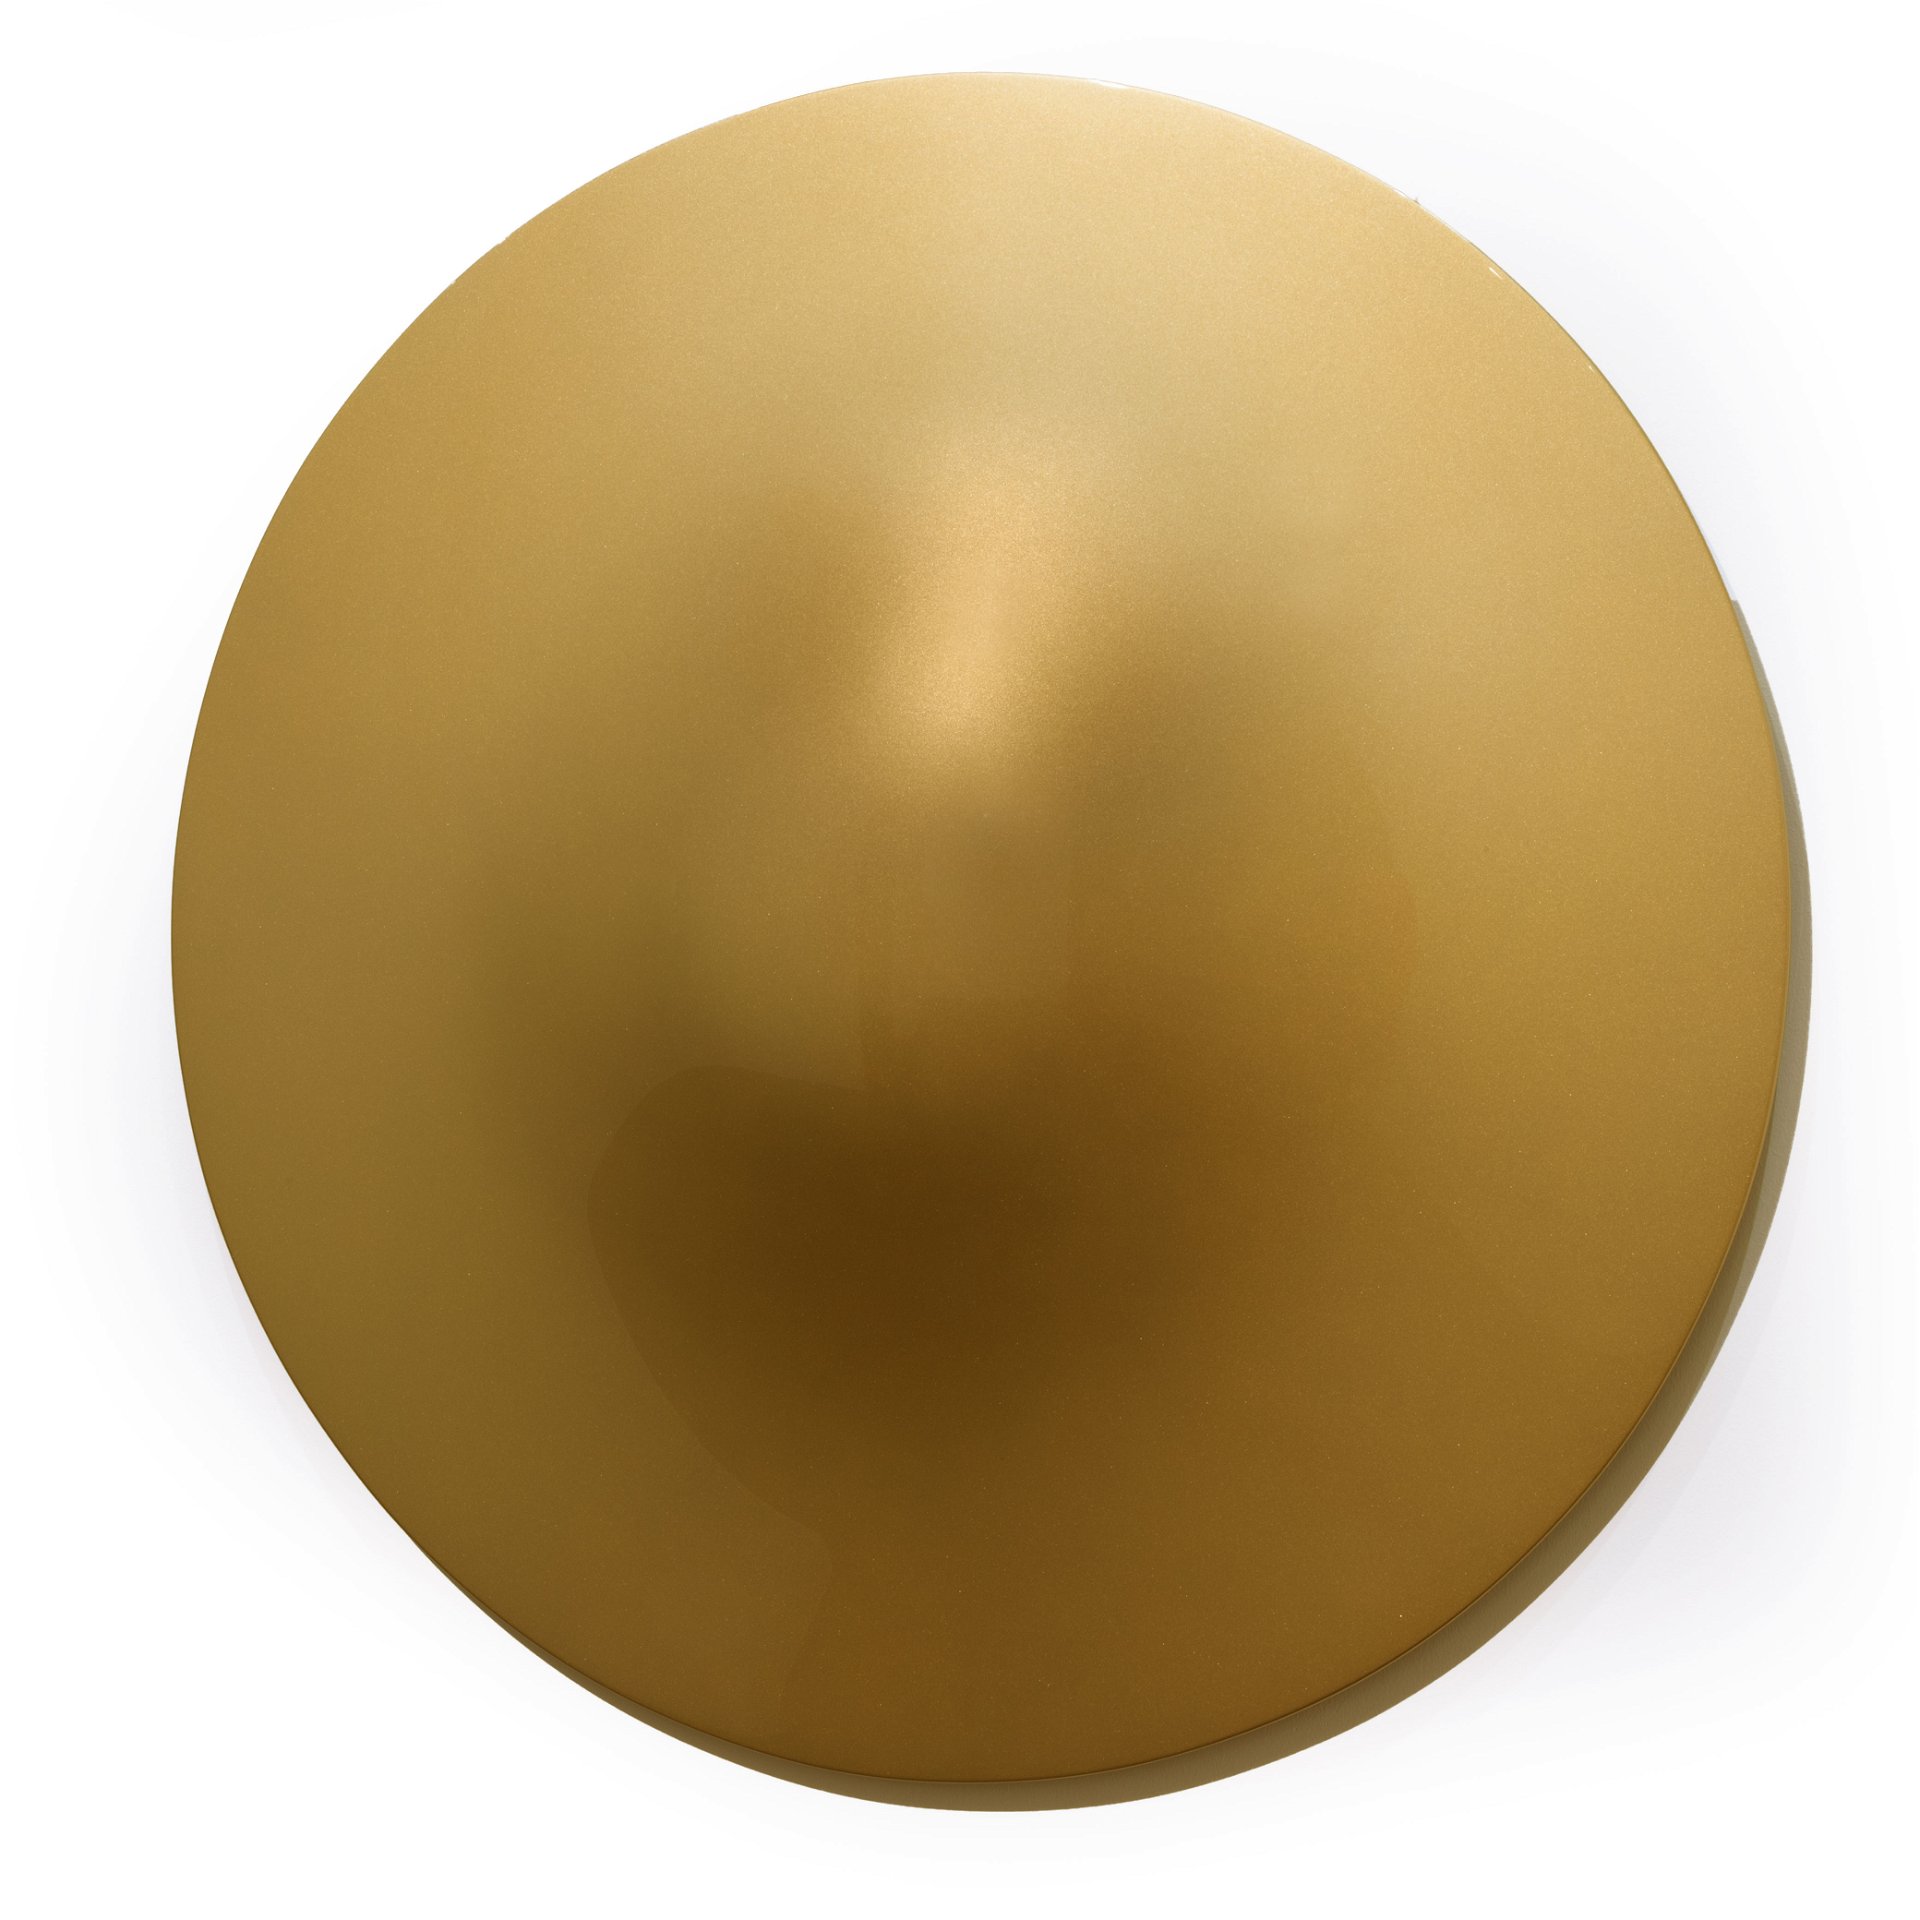 5. »Gold Ufo« von Vincent Szarek: »Das Lichtspiel dieses  Kunstwerks erinnert mich an glänzende Diamantpavés, die die Augen zum Strahlen bringen.«